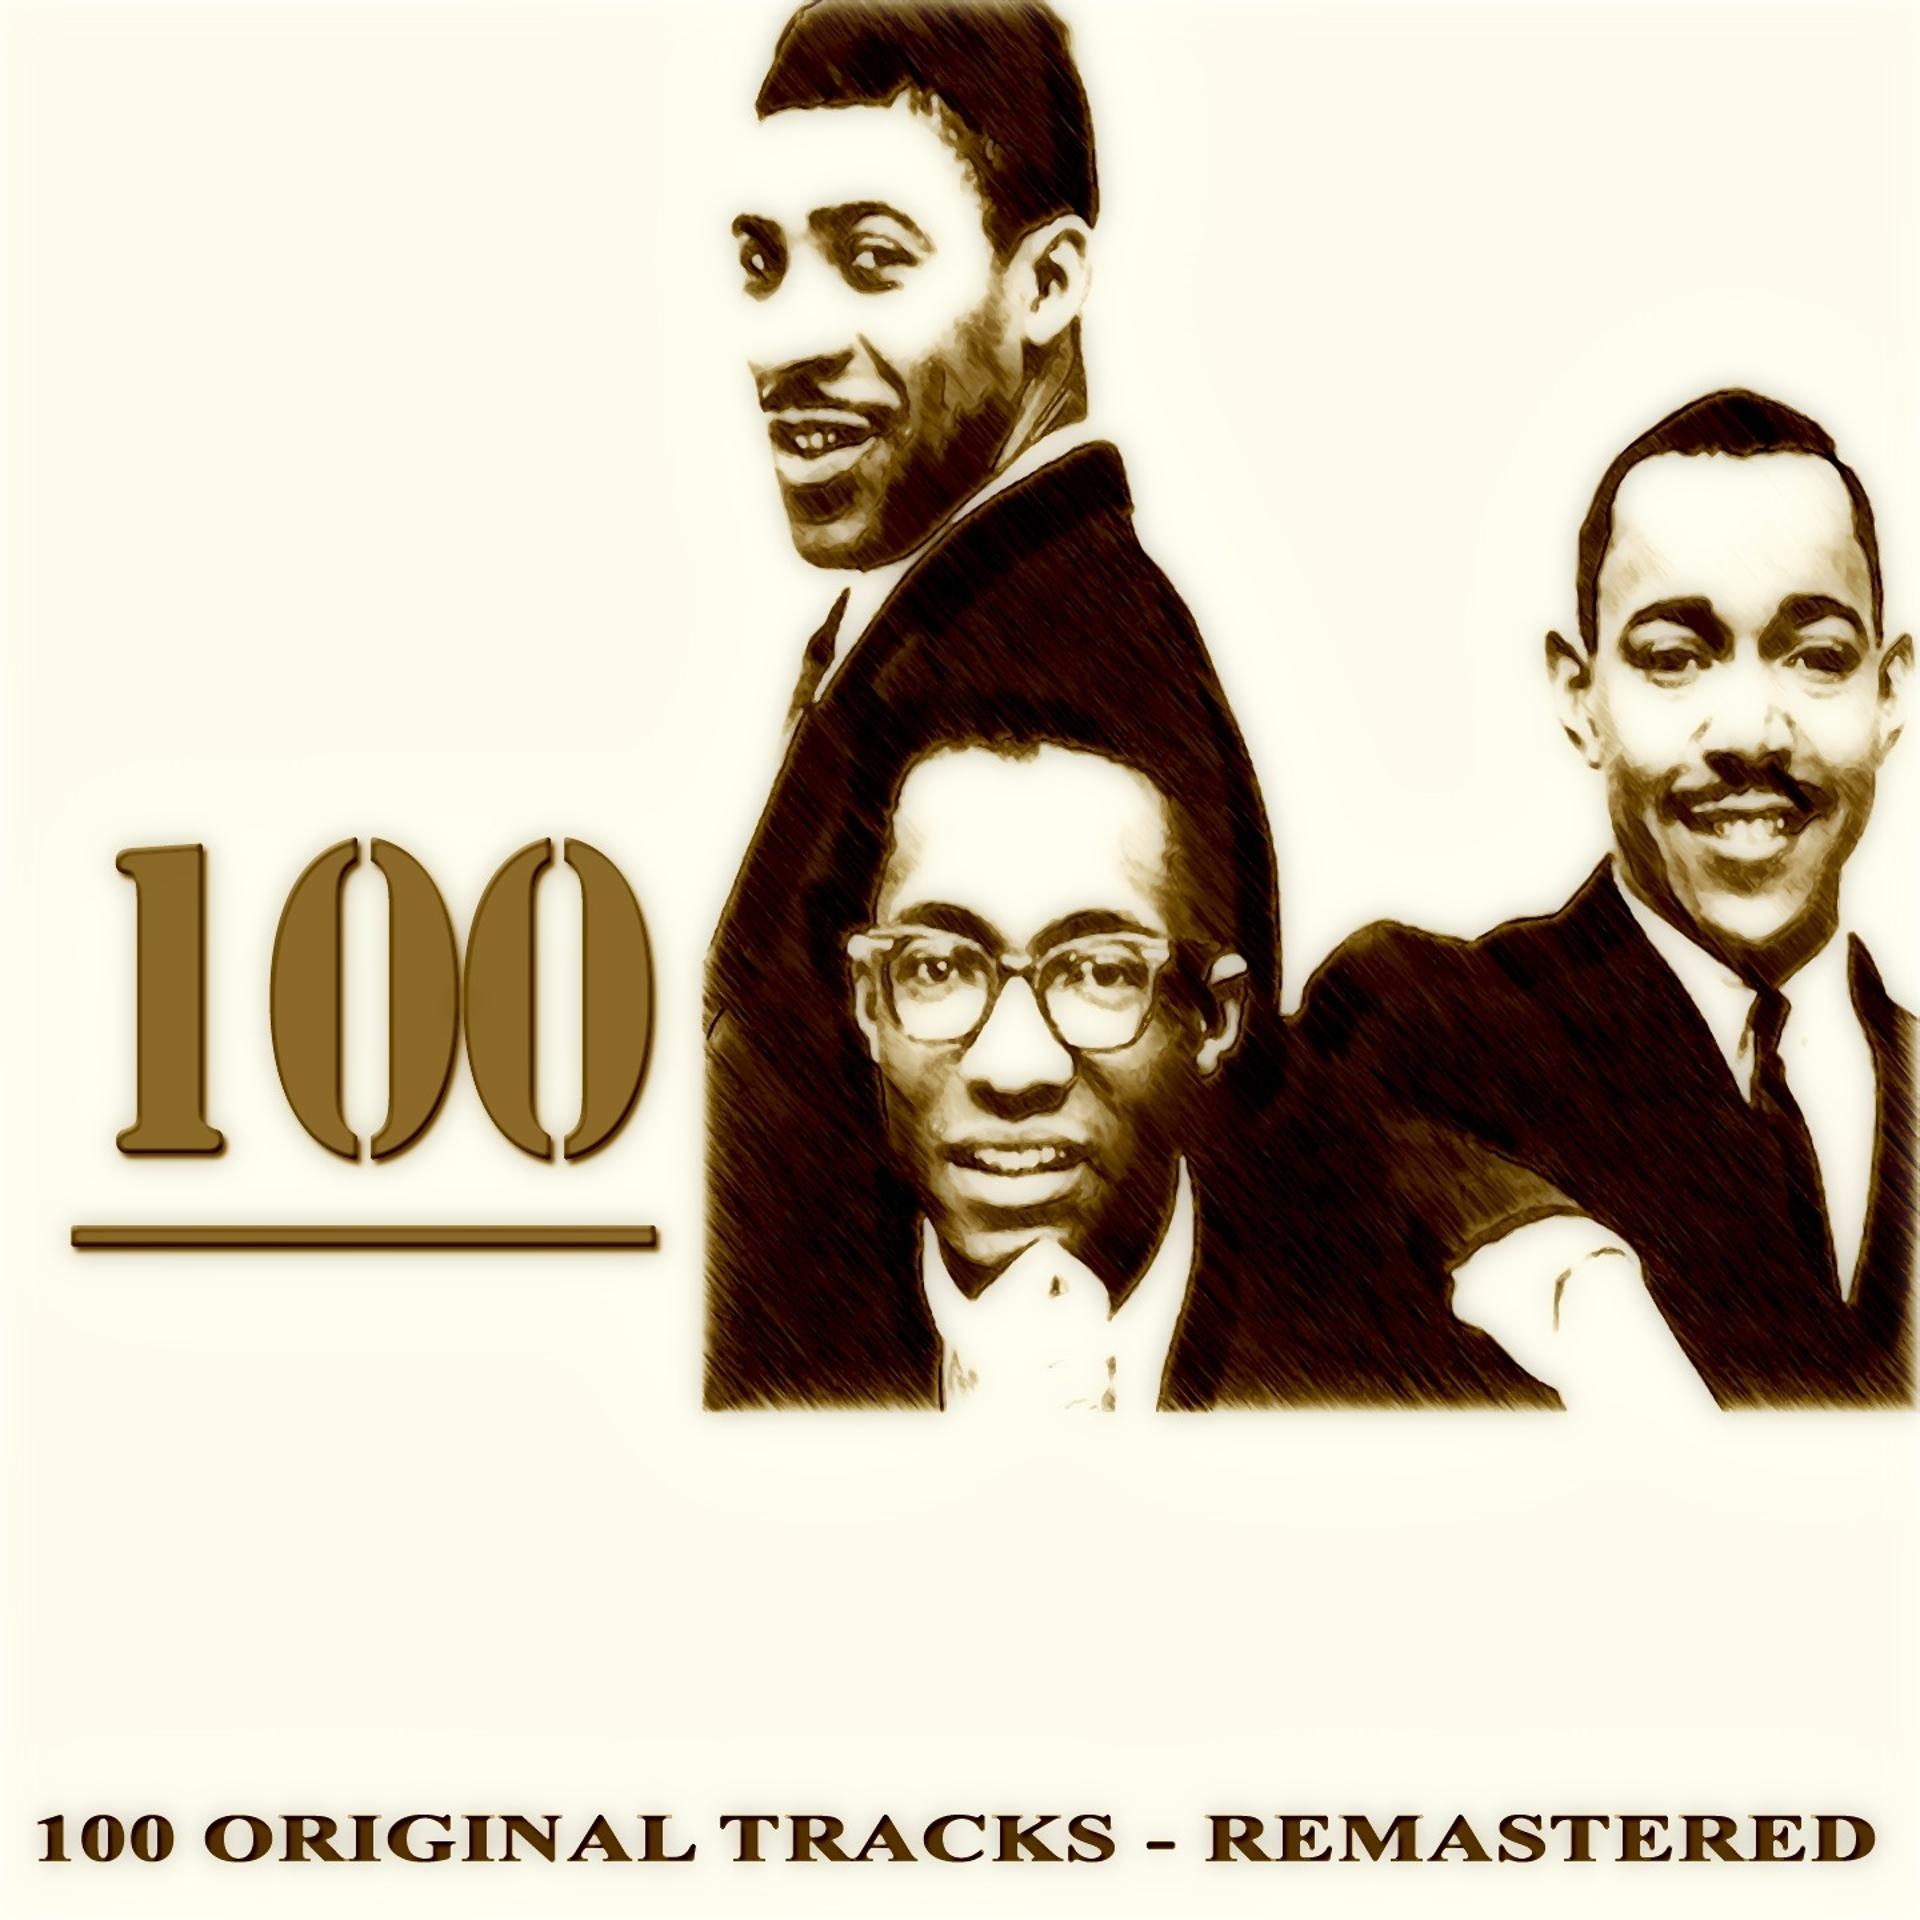 Постер альбома 100 (100 Original Tracks - Digitally Remastered)